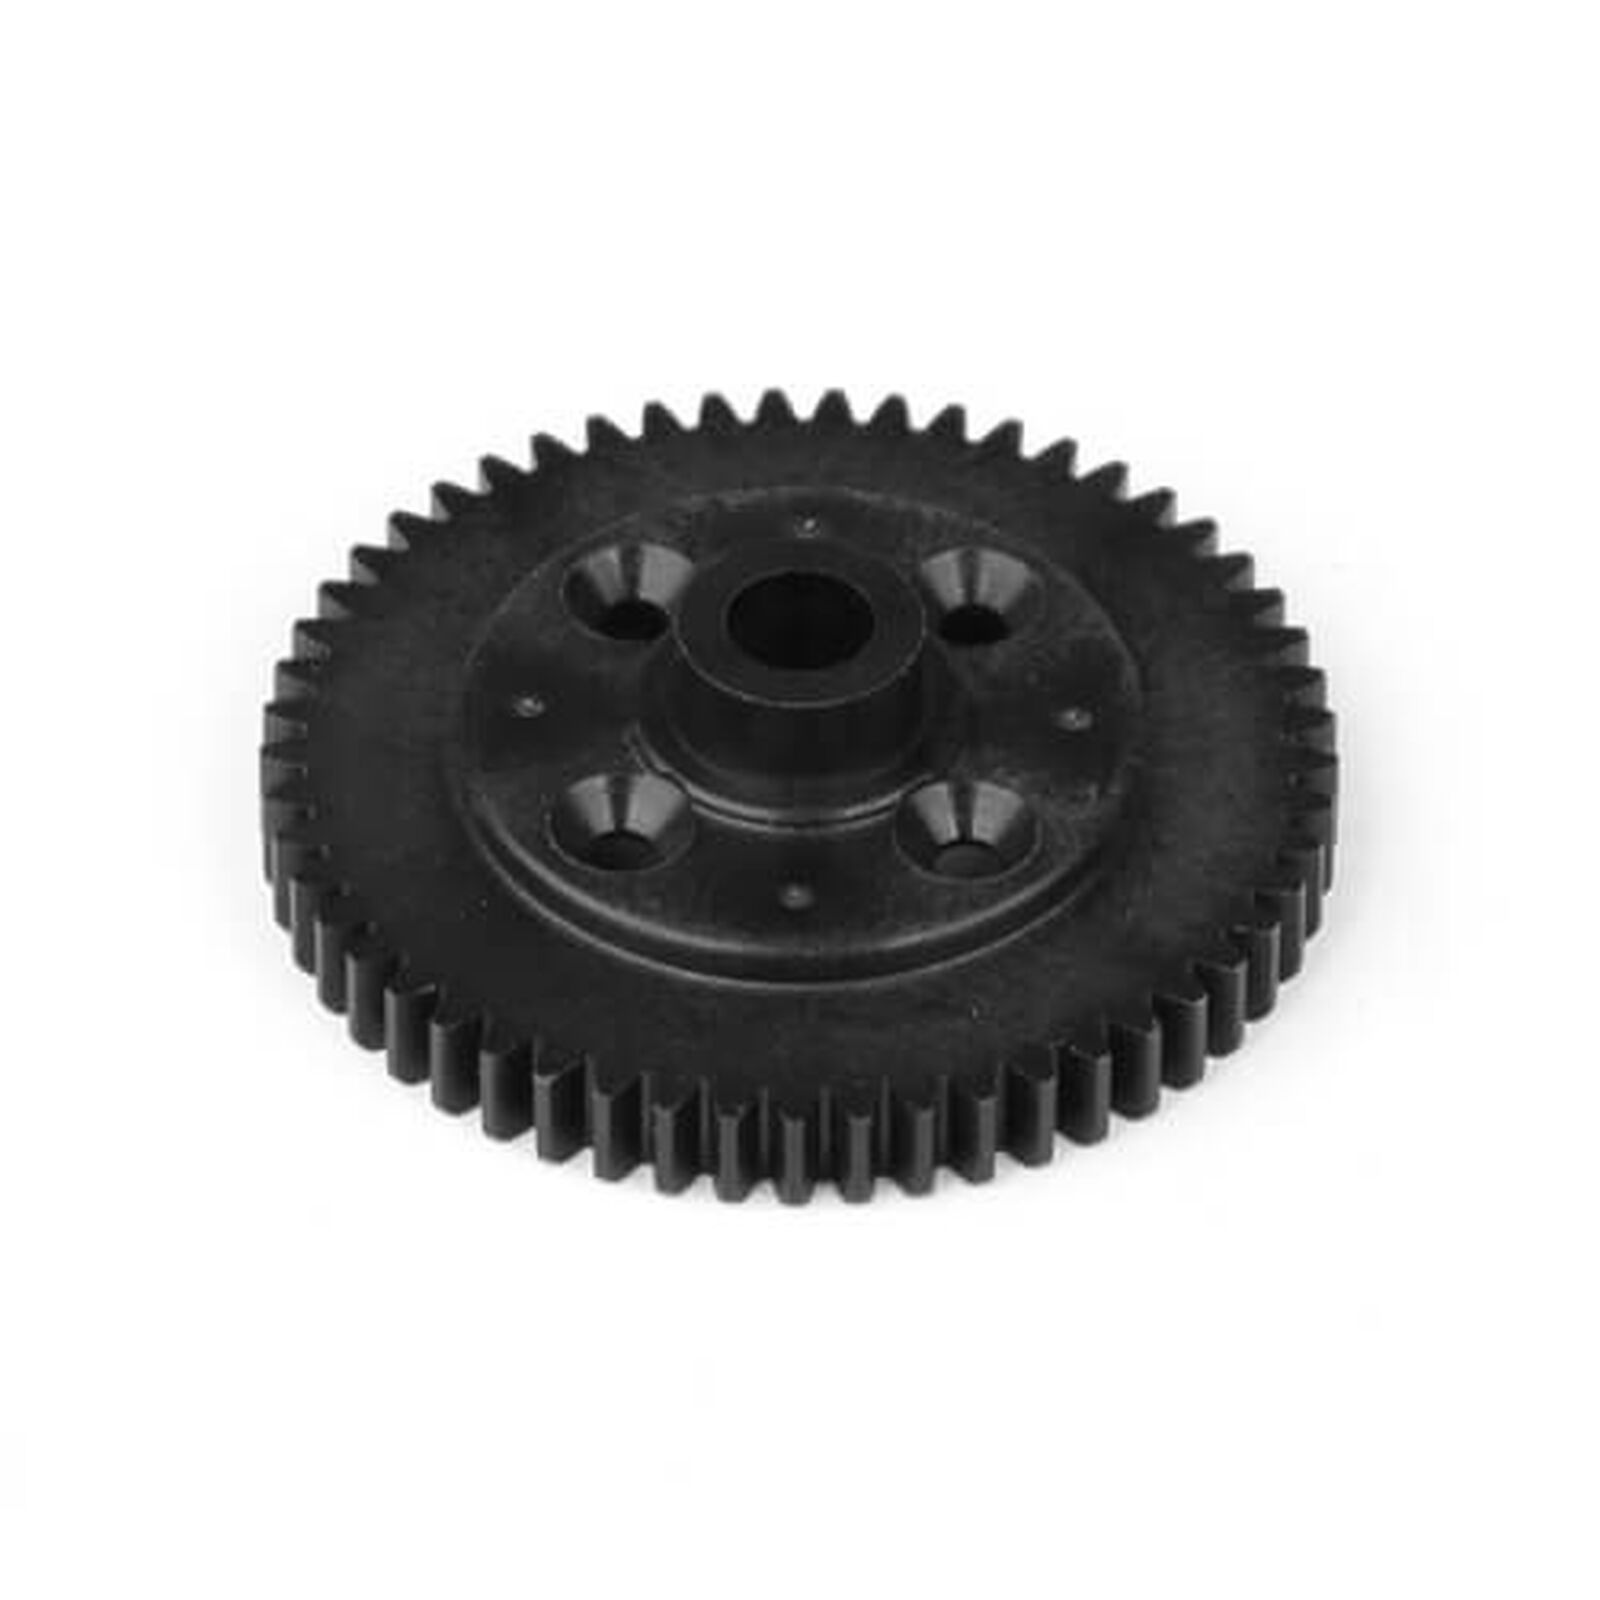 Spur Gear 53t 32p, Composite Black: ET410